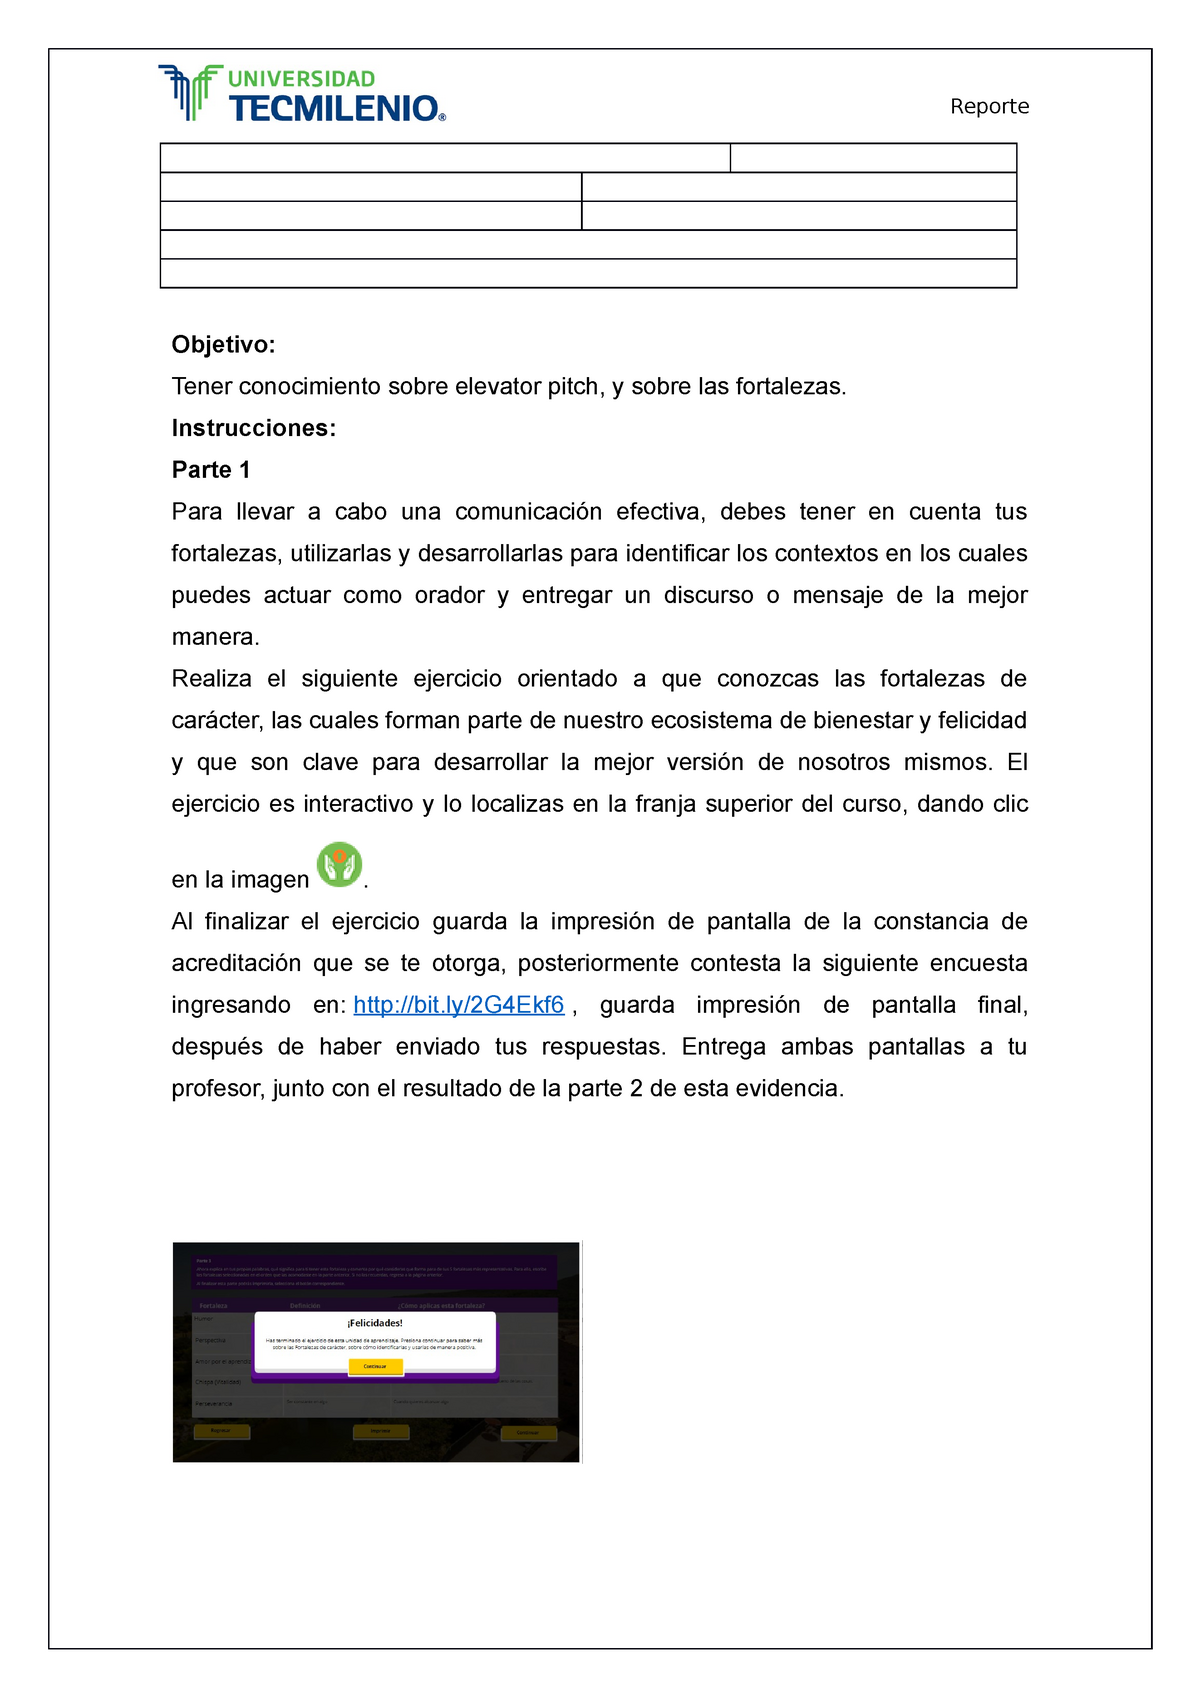 Semana 3 comunicación efectiva actividad instrucciones - TecMilenio -  Studocu